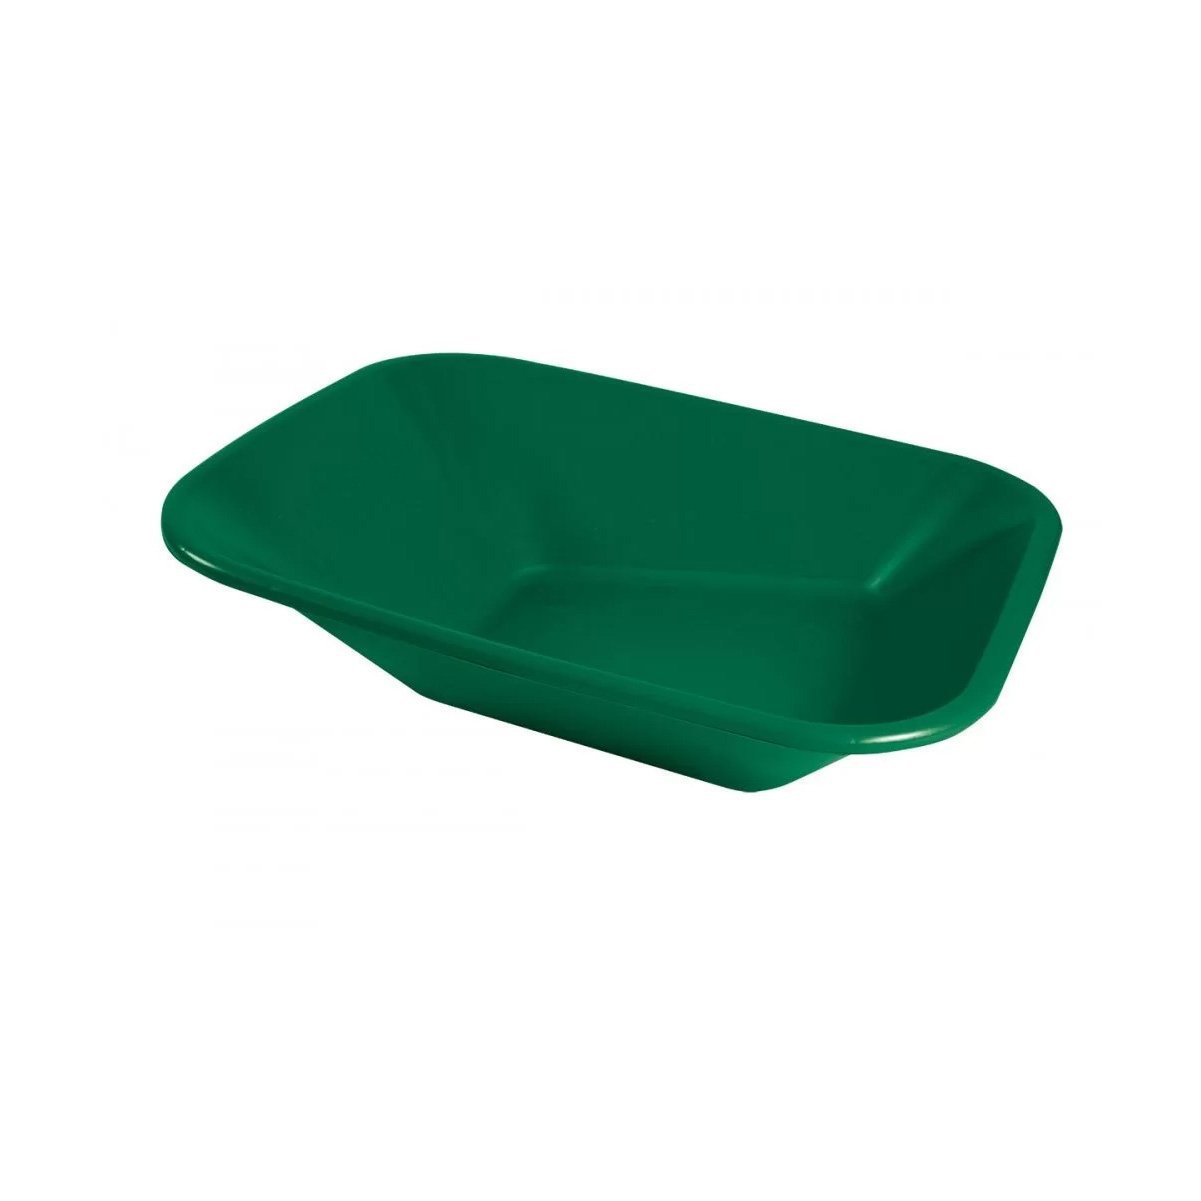 Caçamba Plástica sem Furação para Carrinho de Mão Verde 60 litros - Metasul, Opção: Verde